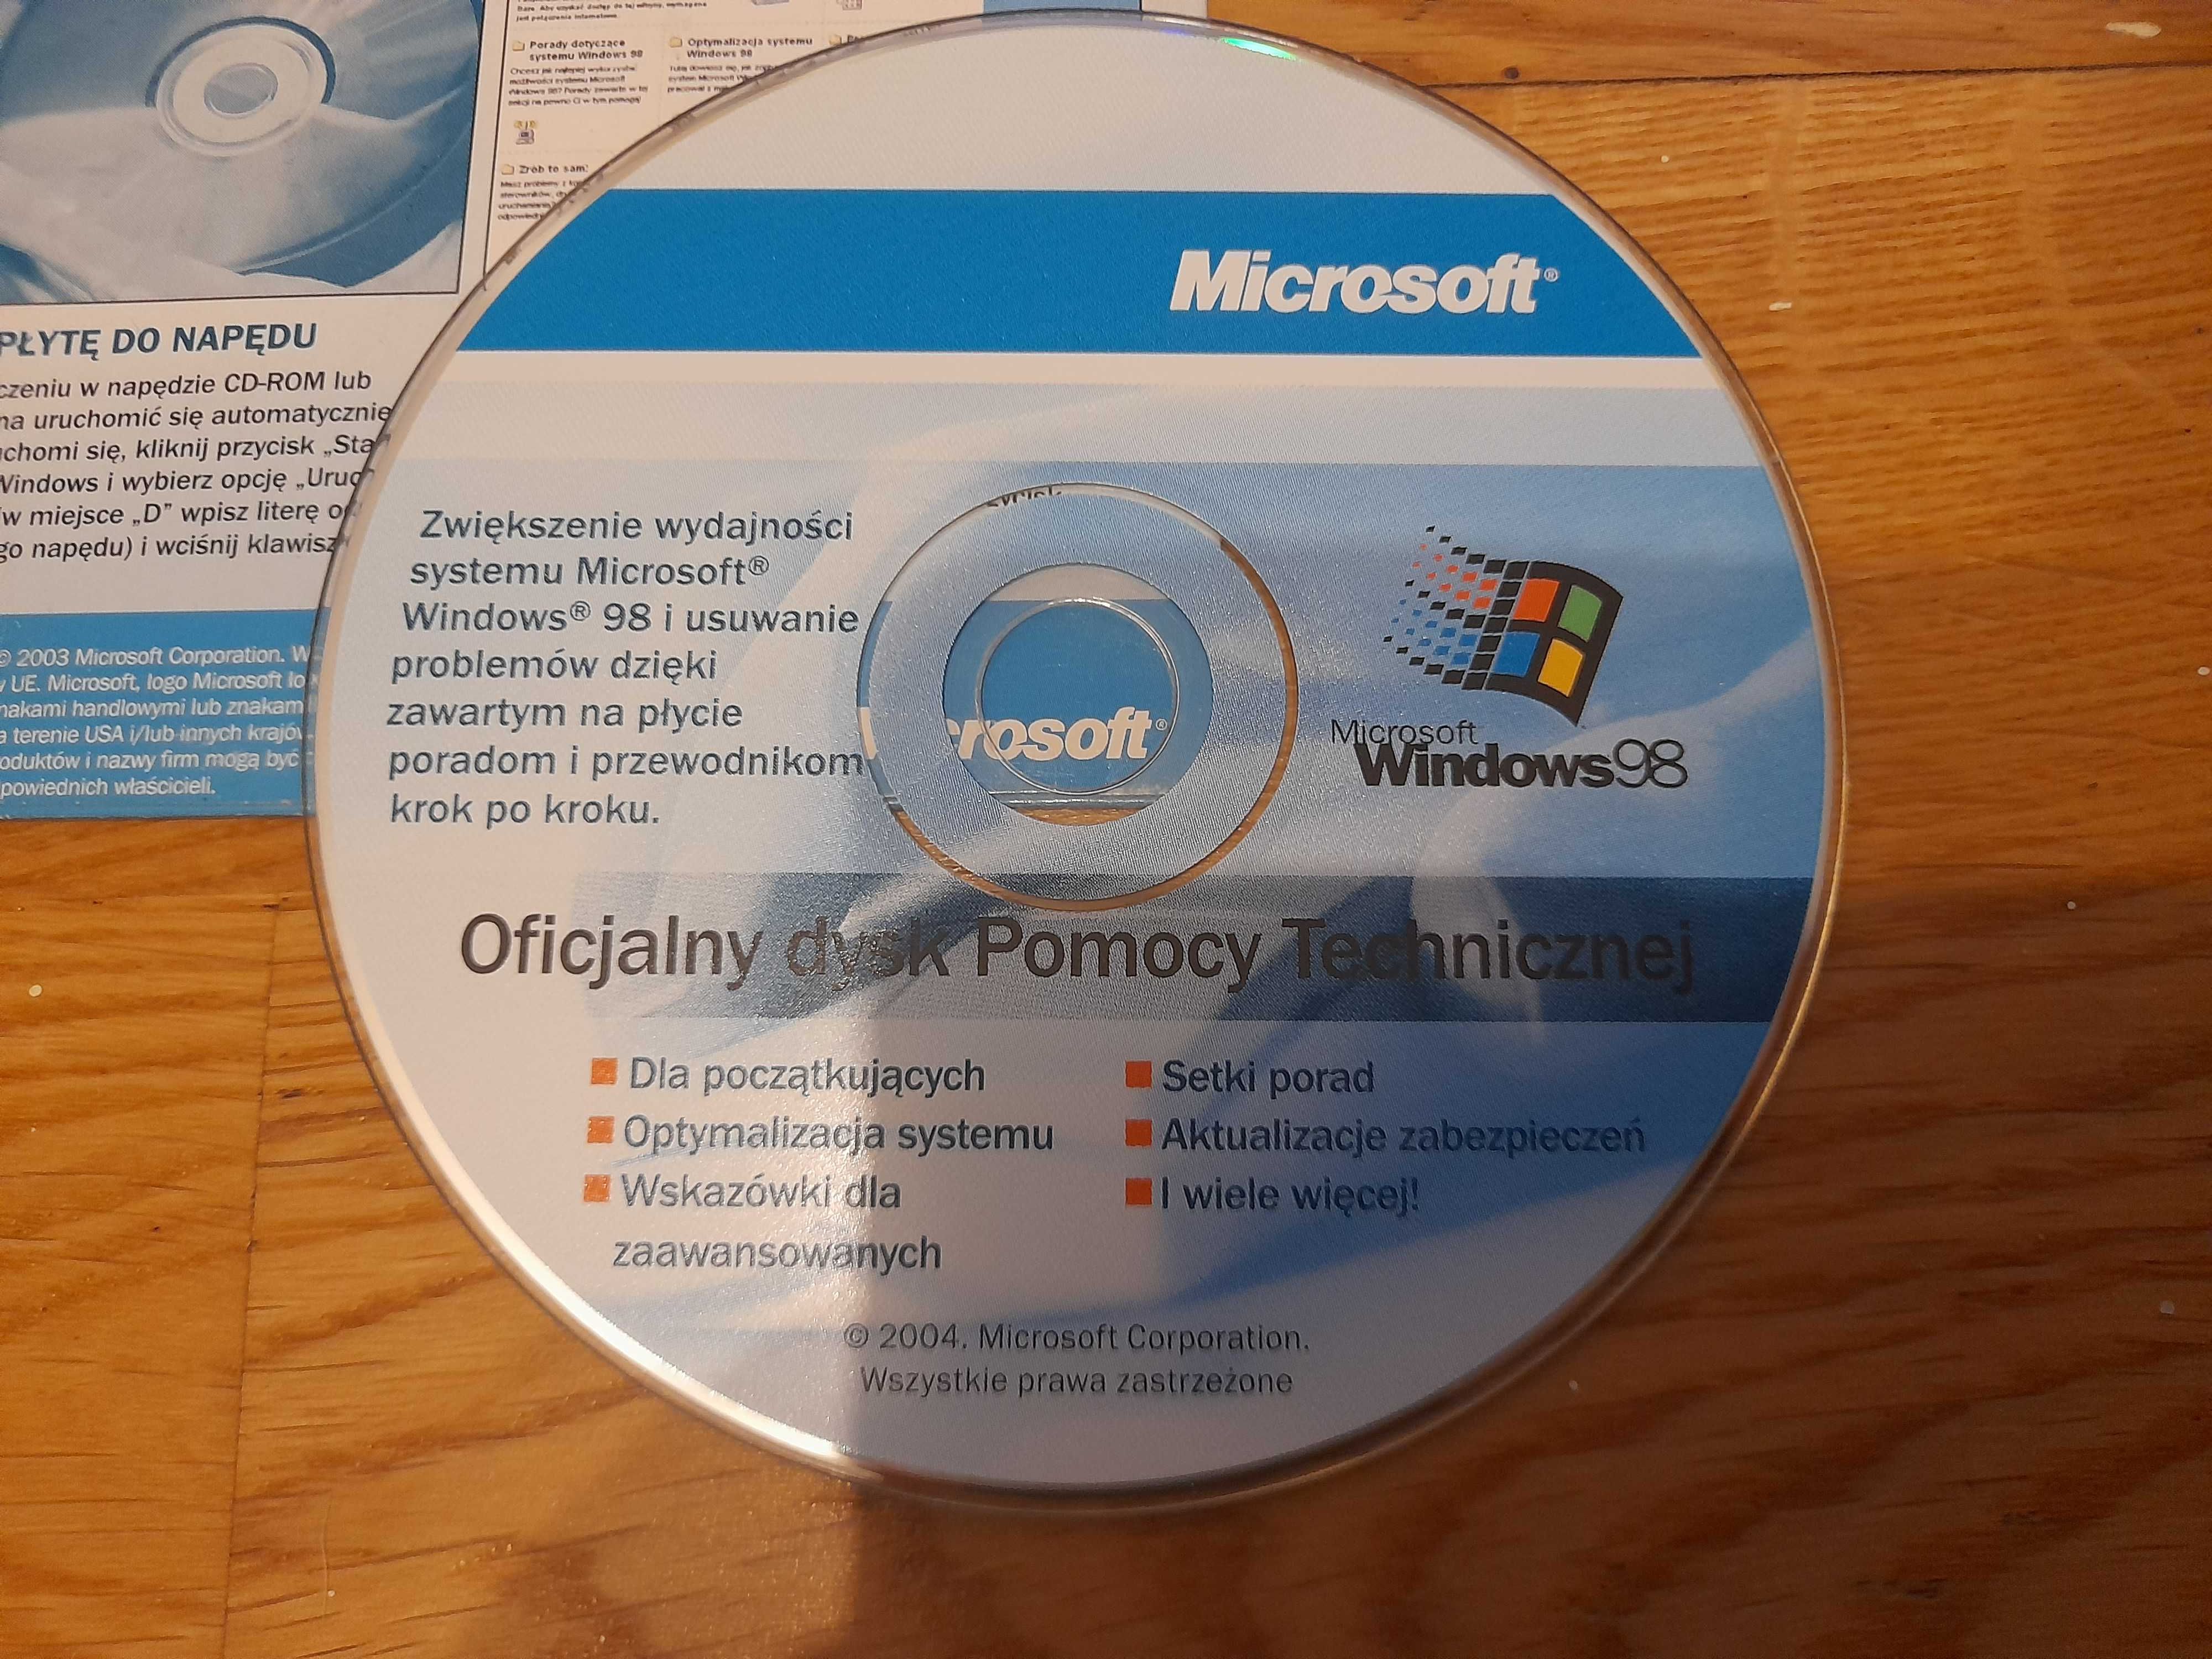 Oficjalny dysk pomocy technicznej Windows 98